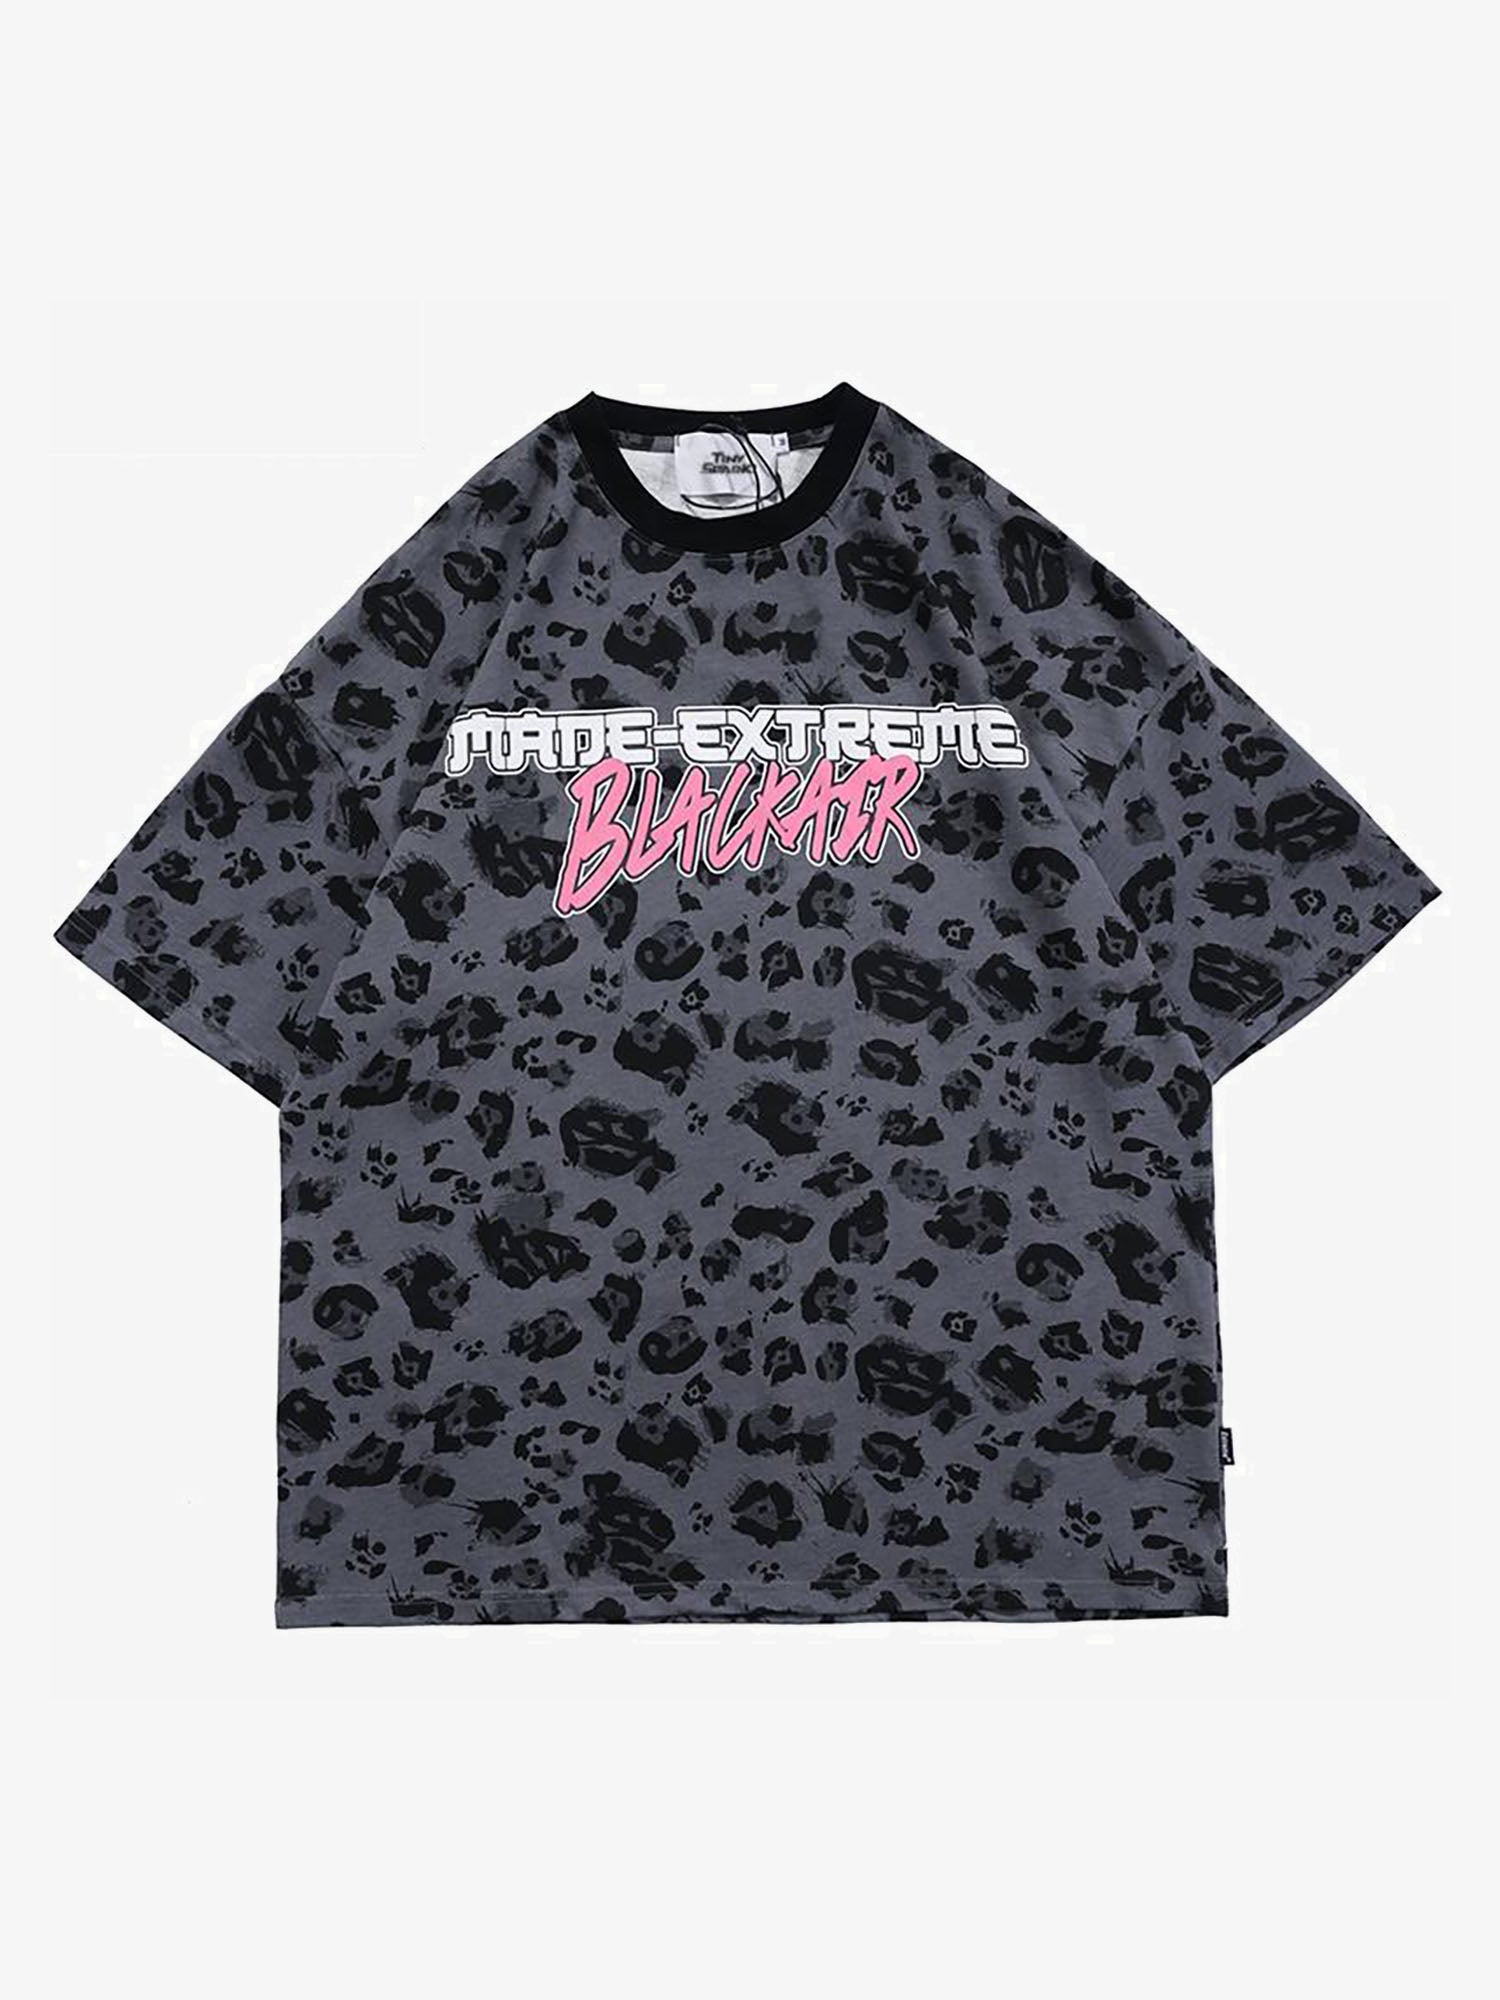 Justnotag T-shirt manica corta con stampa leopardata nera grigia di Justnotag